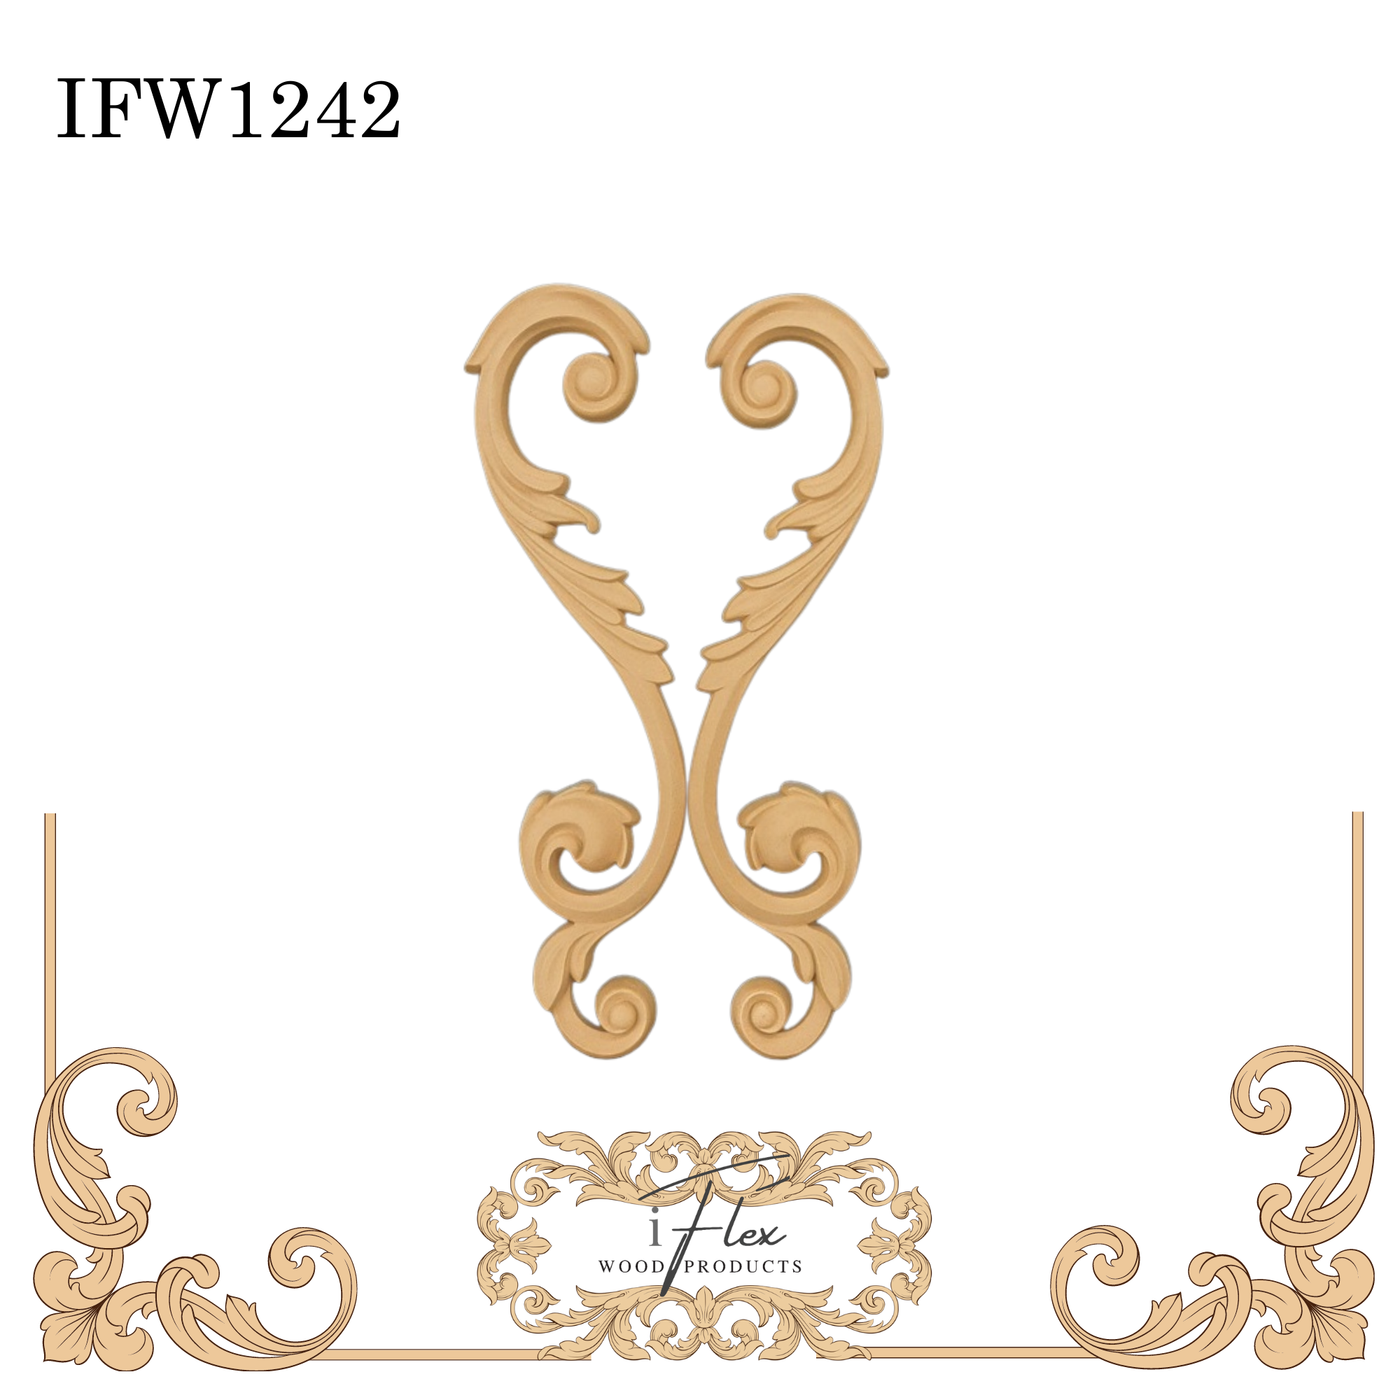 IFW 1242